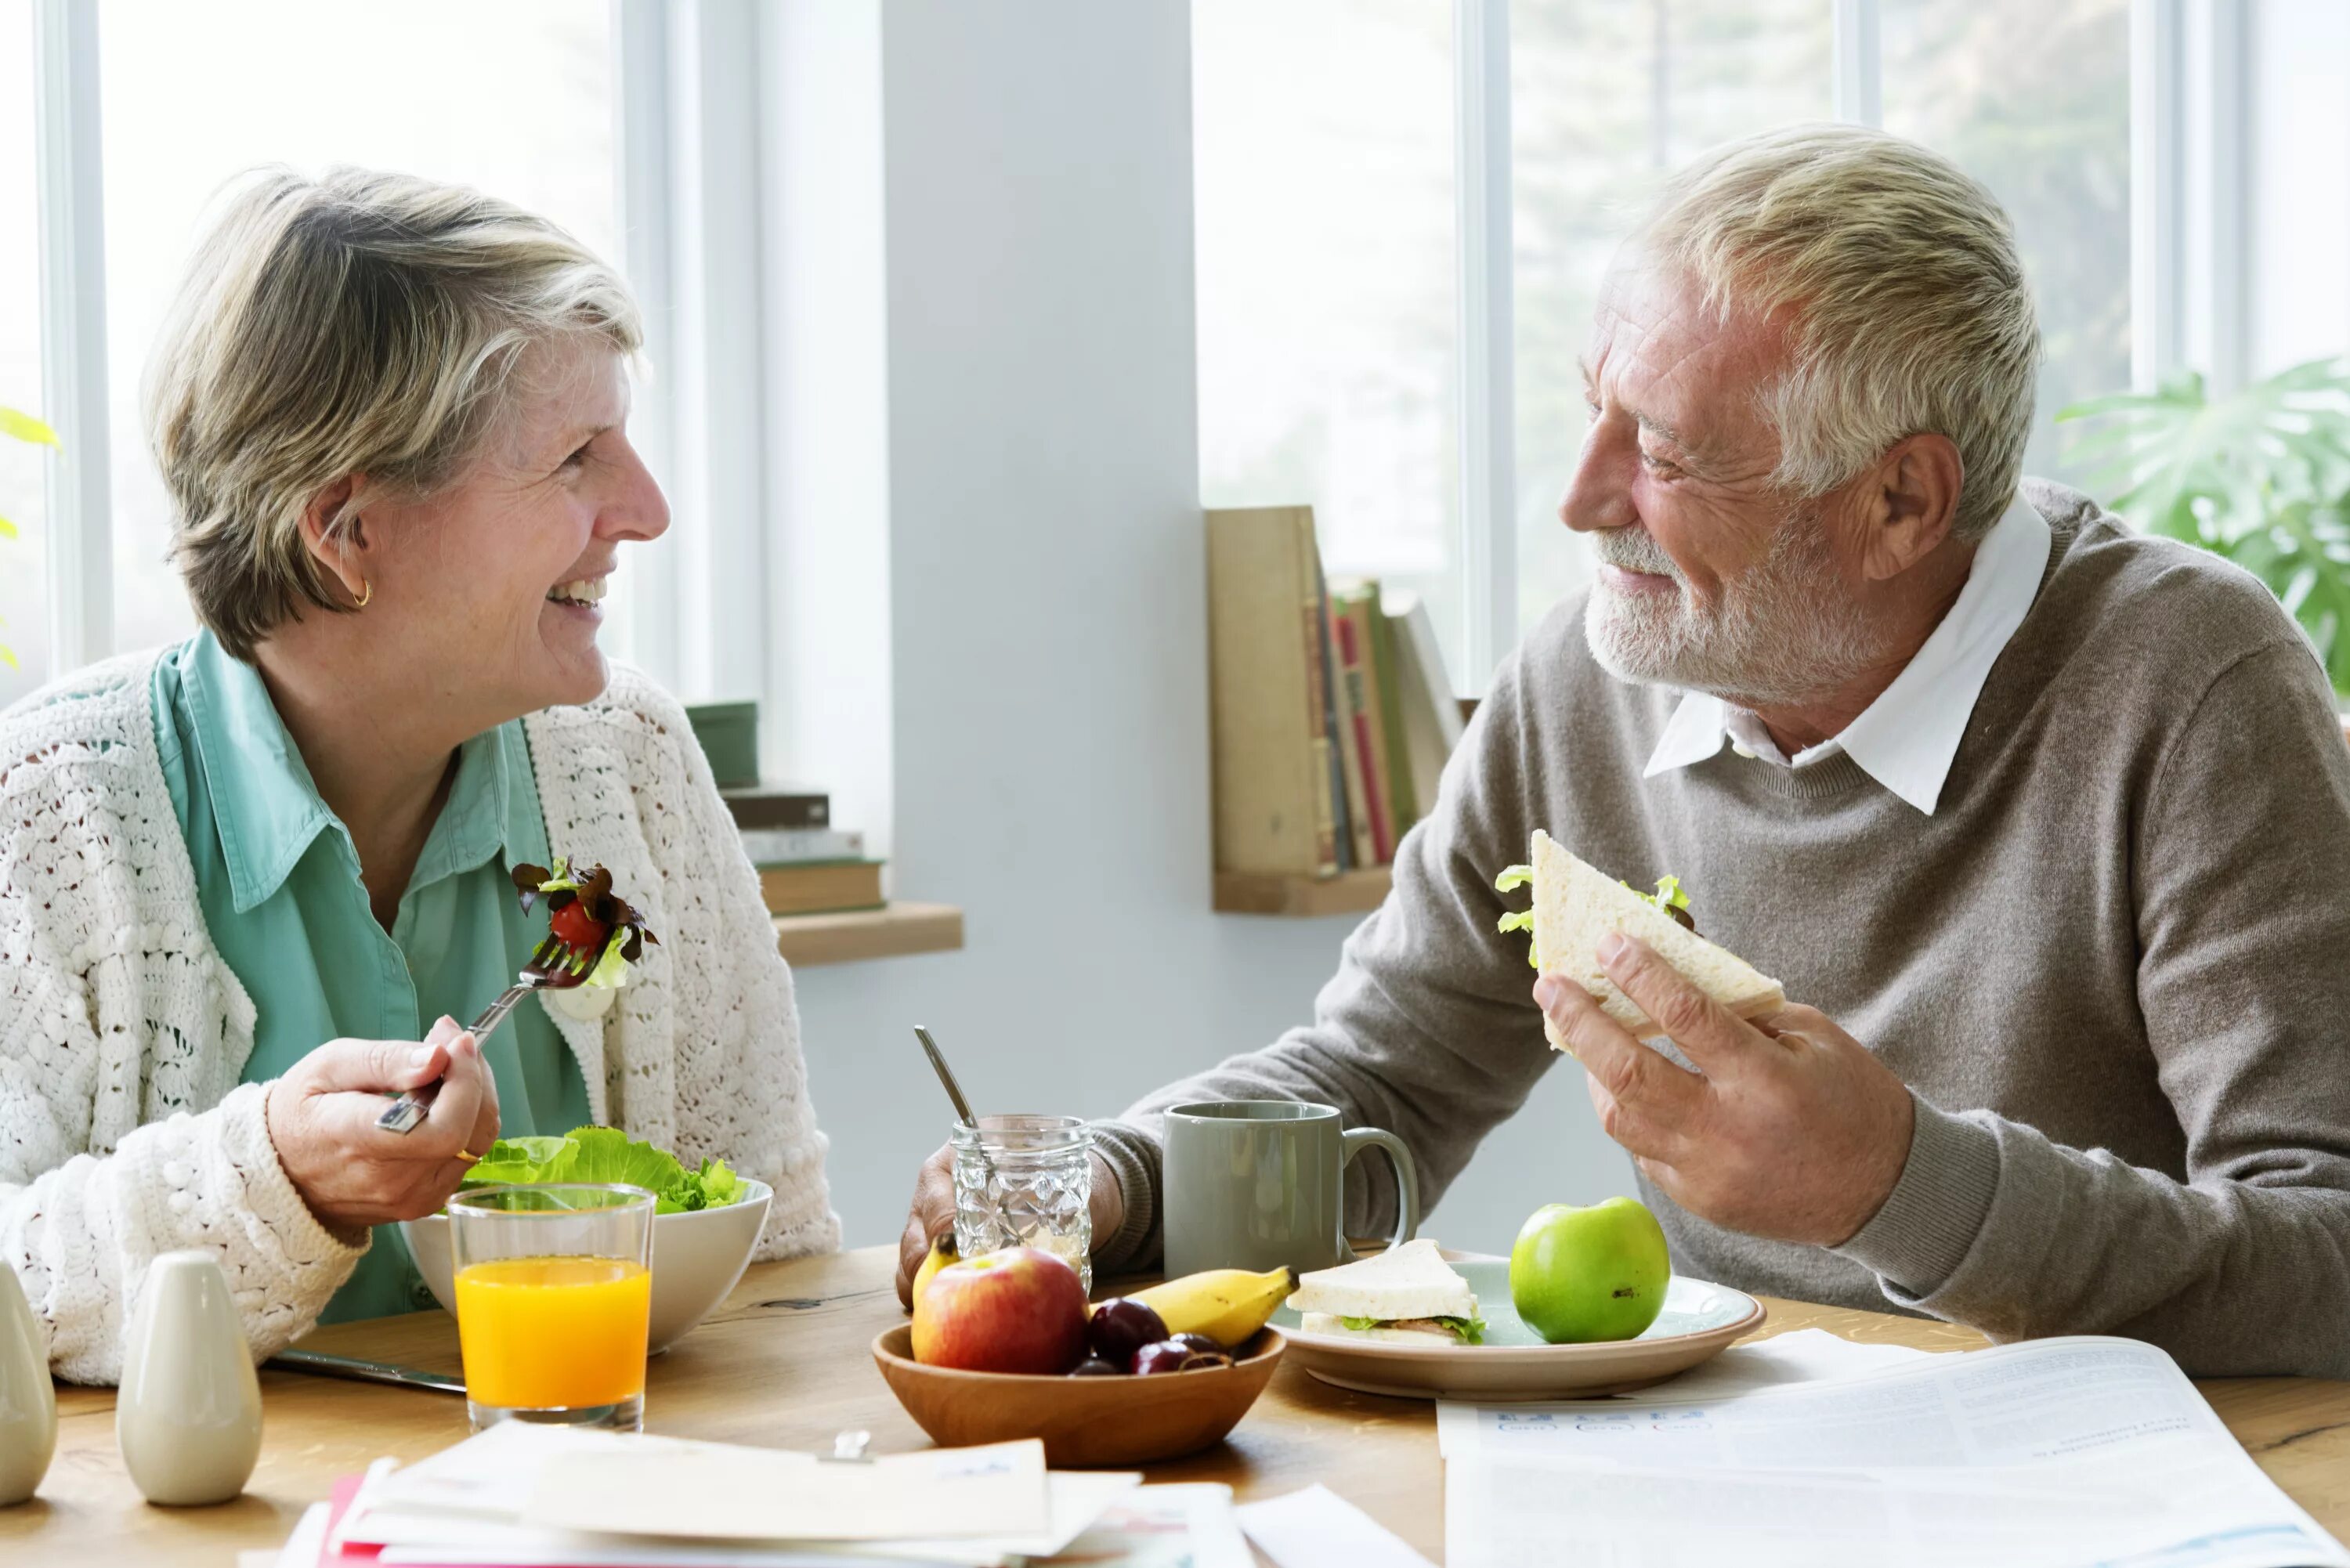 Питания лиц пожилого возраста. Еда для пожилых людей. Здоровое питание для пожилых. Рациональное питание в пожилом возрасте. Здоровое питание в зрелом возрасте.